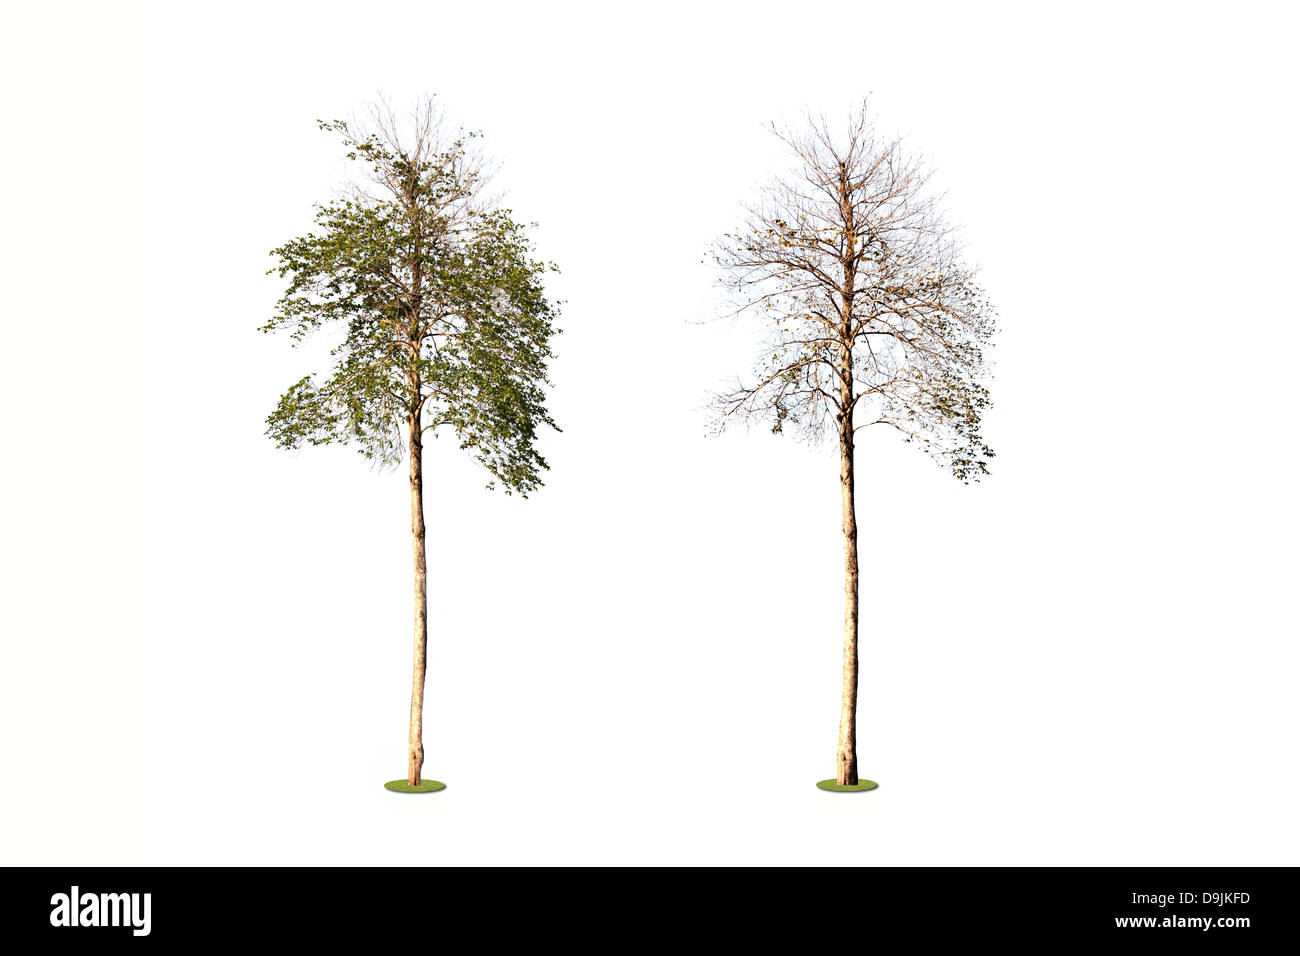 L'arbre tropical sur un fond blanc et avant et après le changement de l'arbre. Banque D'Images